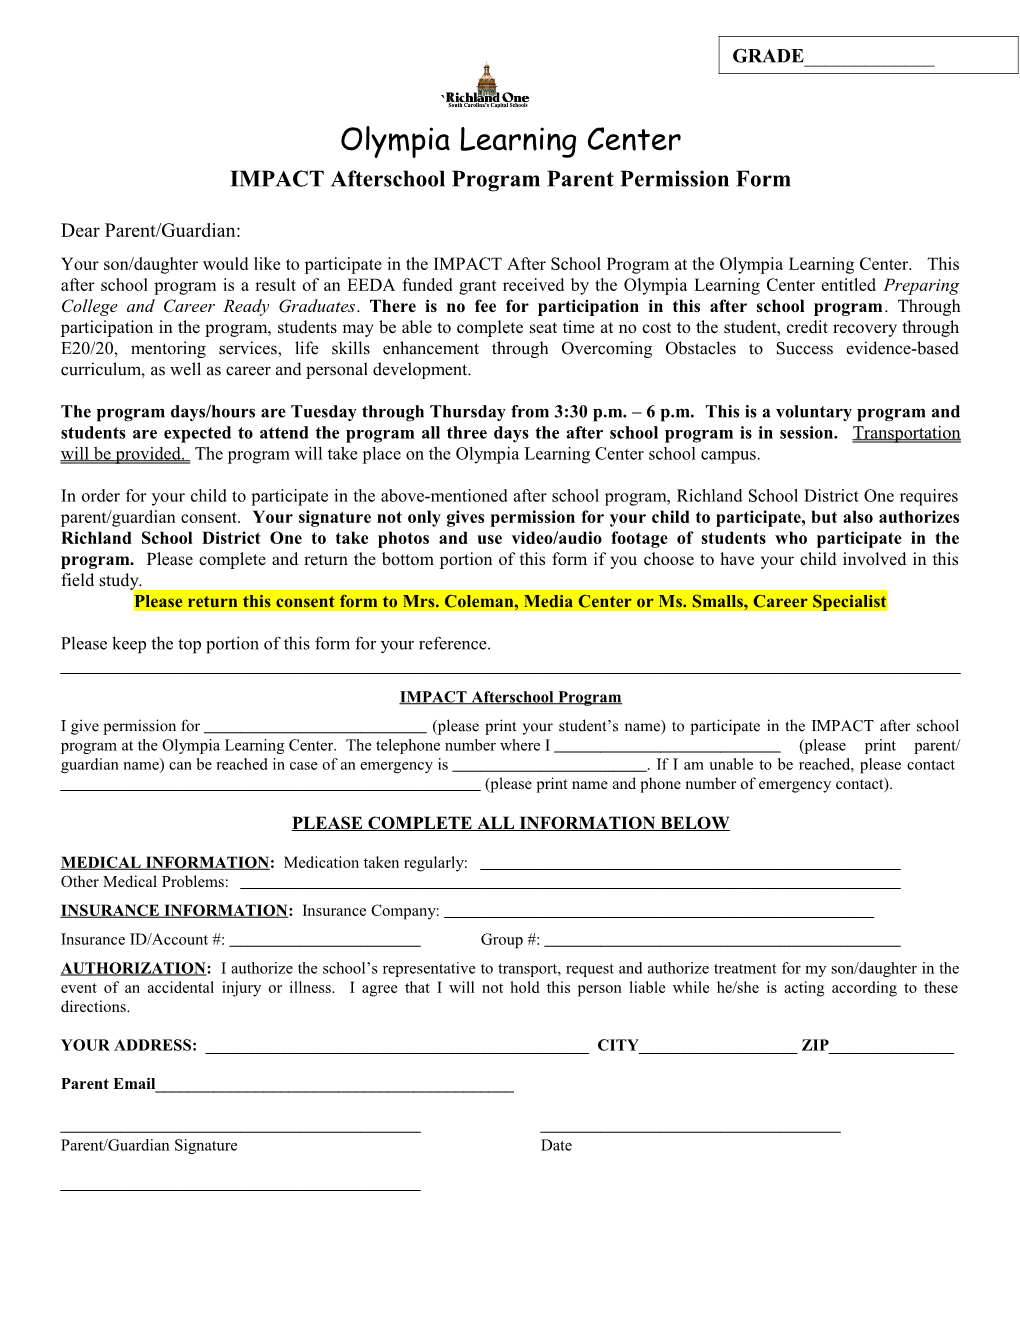 IMPACT Afterschool Program Parent Permission Form